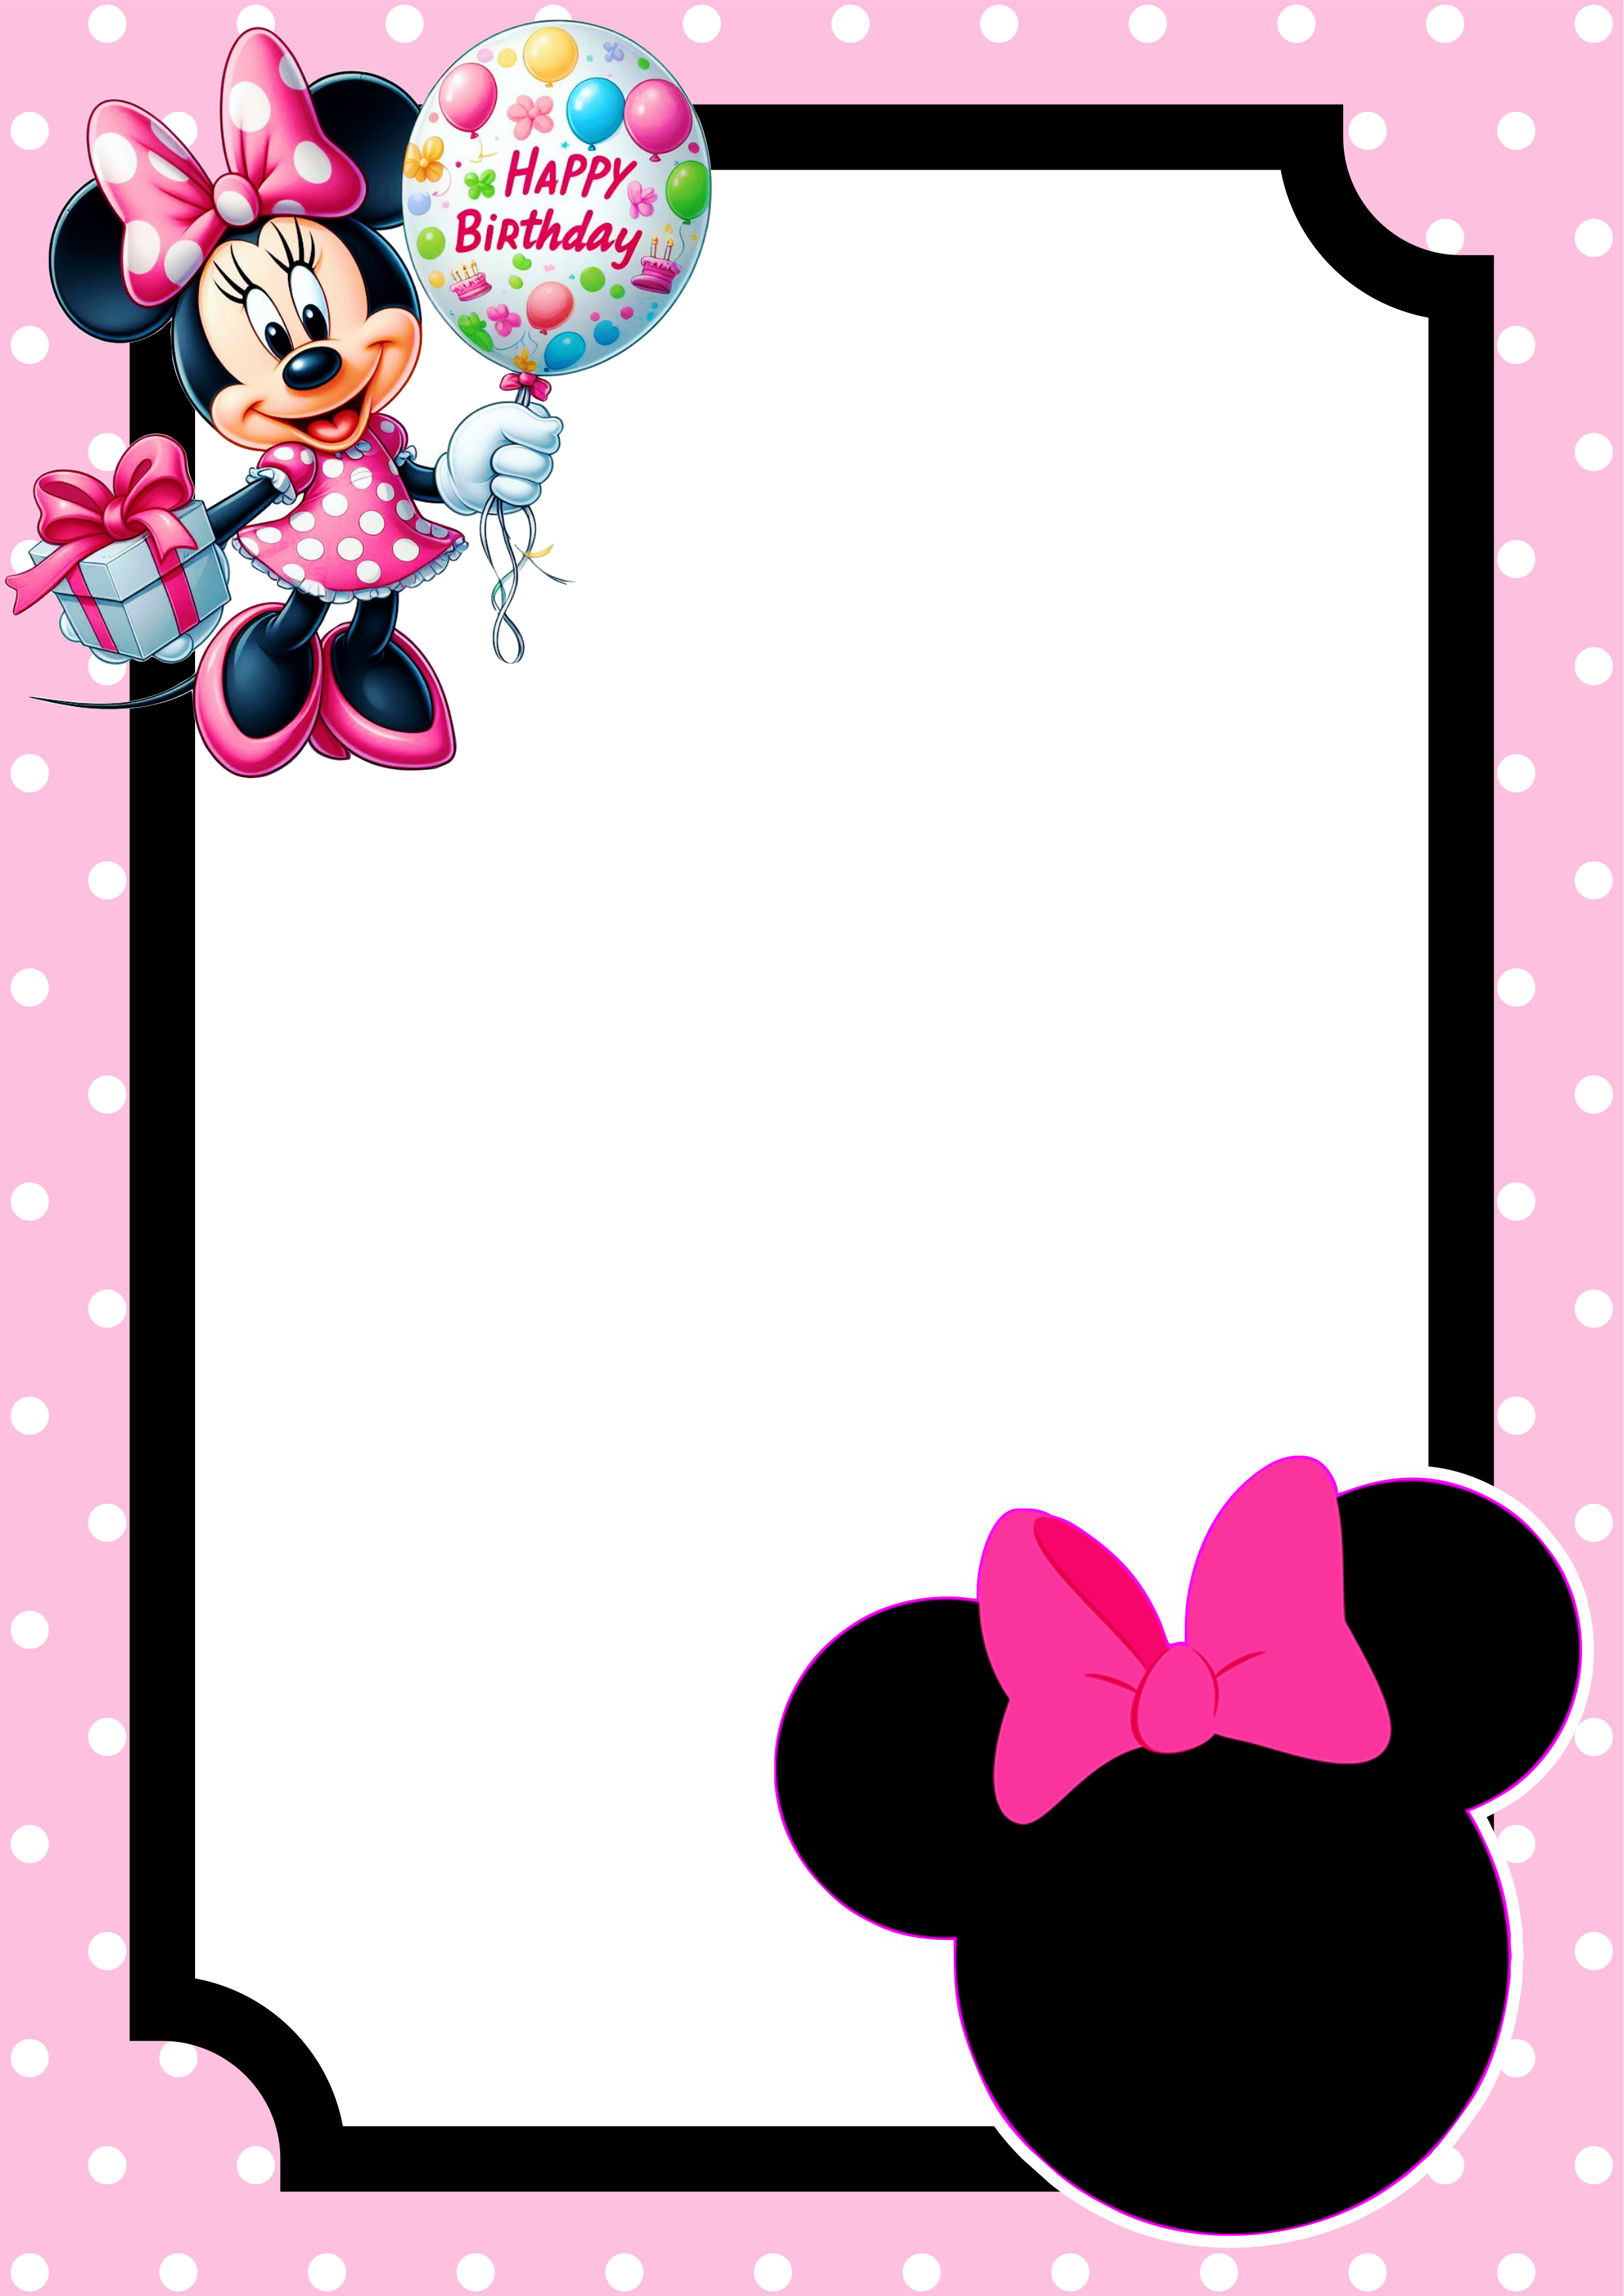 Convite virtual Minnie rosa molde pronto para editar e imprimir festa aniversário infantil png